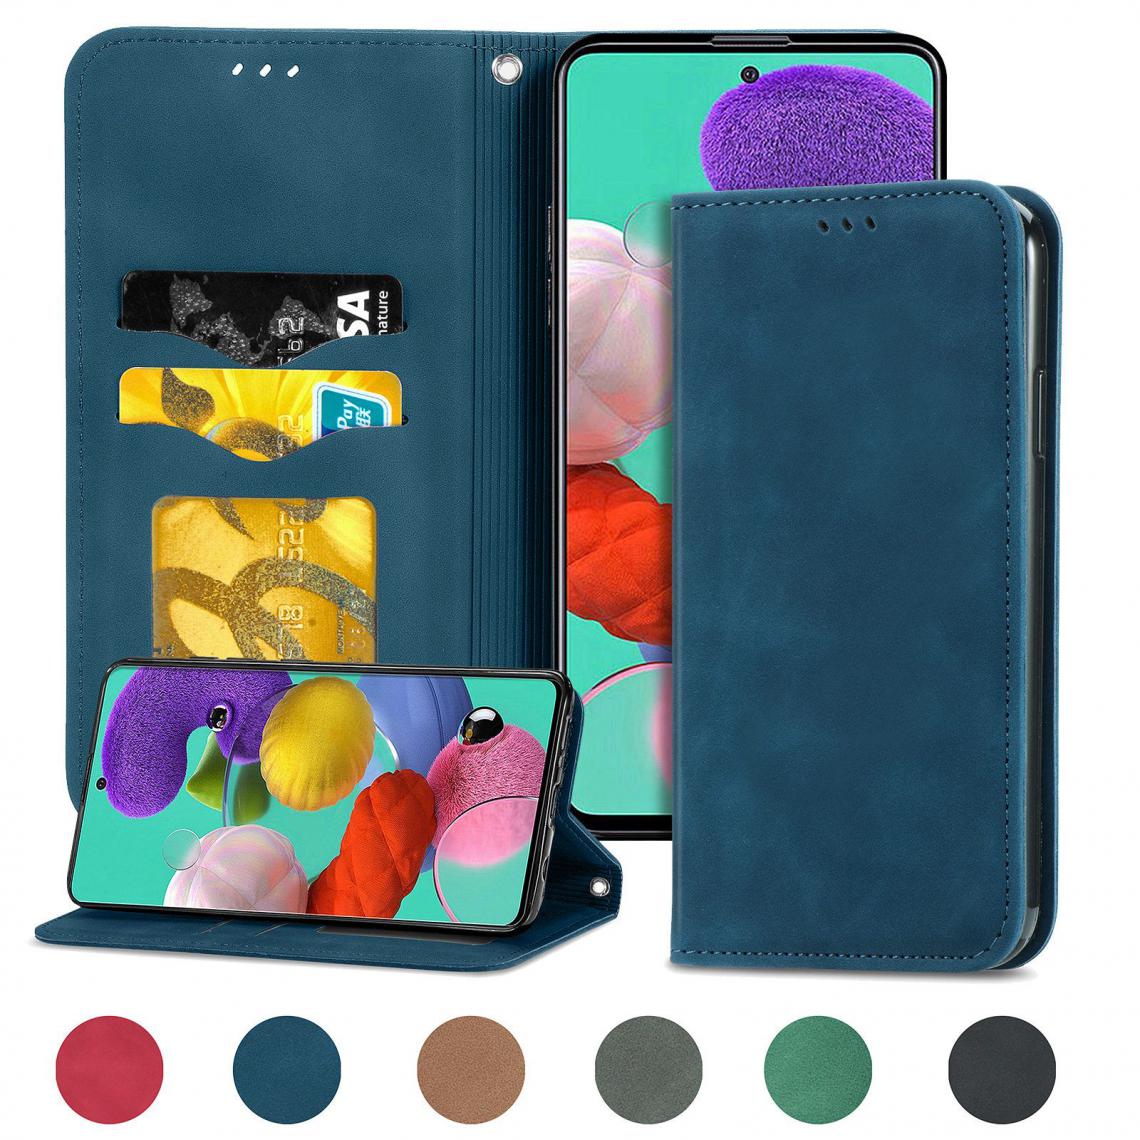 OtterBox - Huawei P smart S Housse Etui Coque de protection type portefeuille (support carte de credit) [Bleu] - Coque, étui smartphone